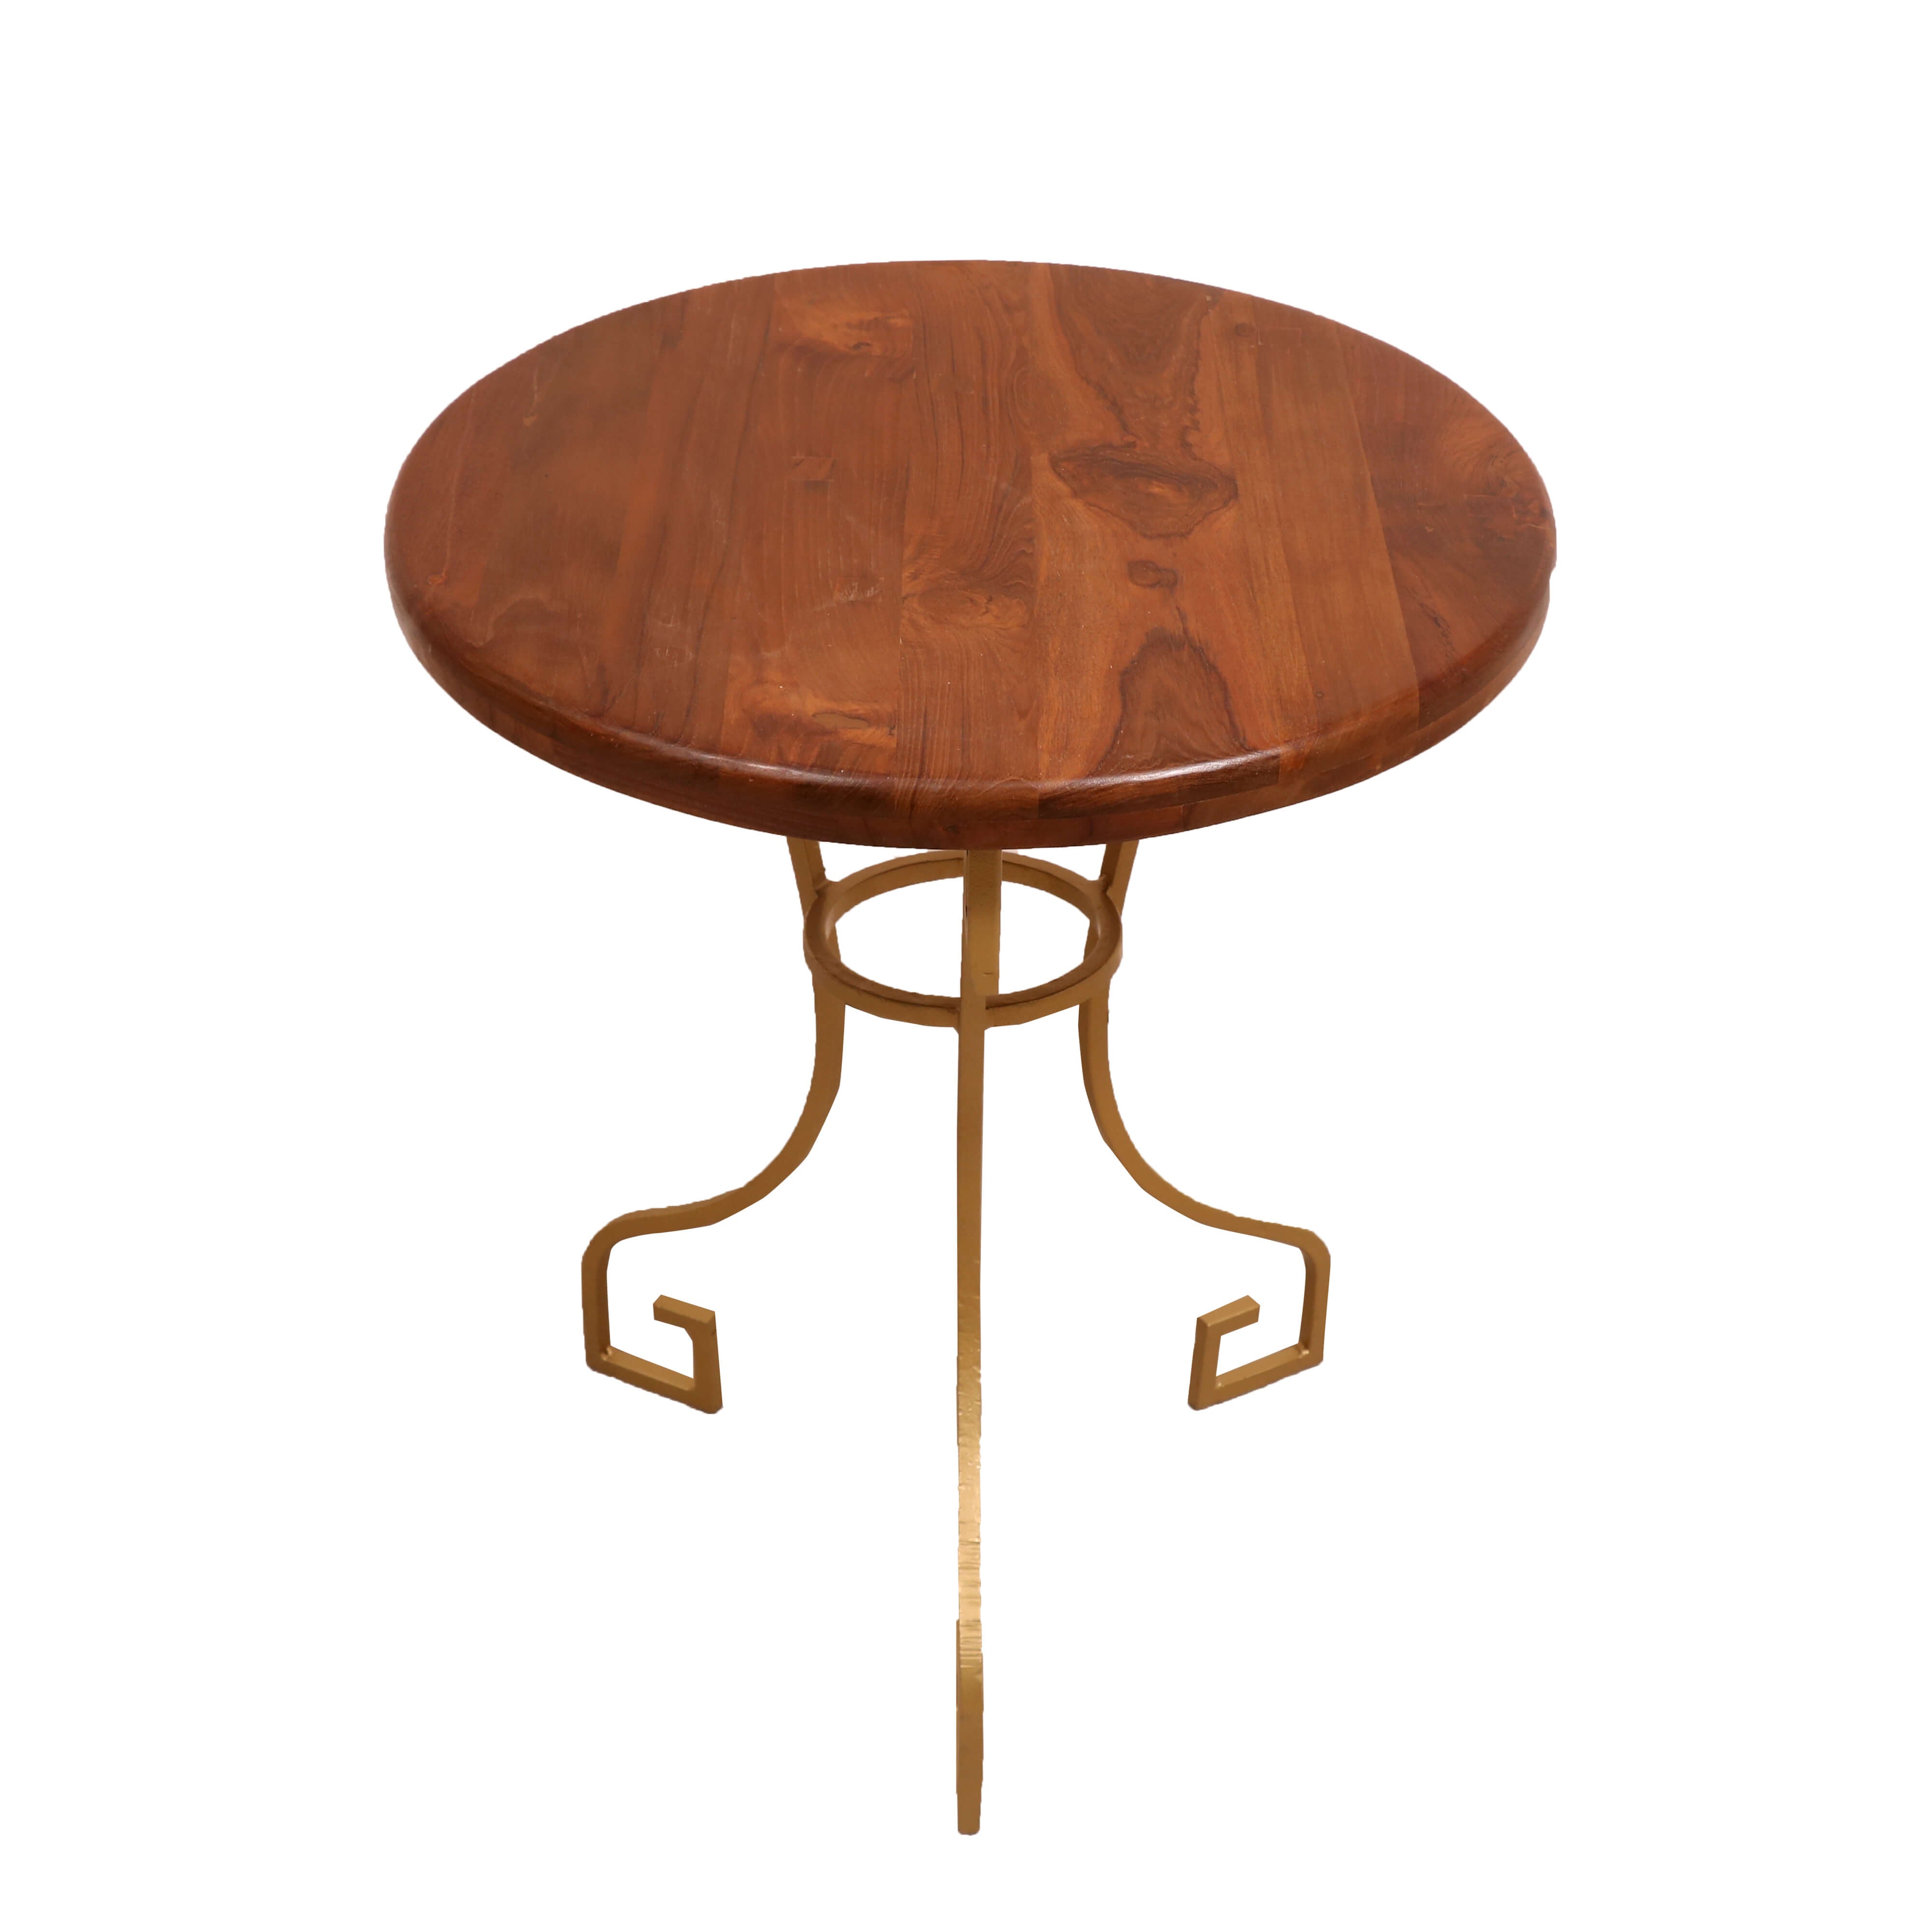 Round Teak Wood Corner Table End Table